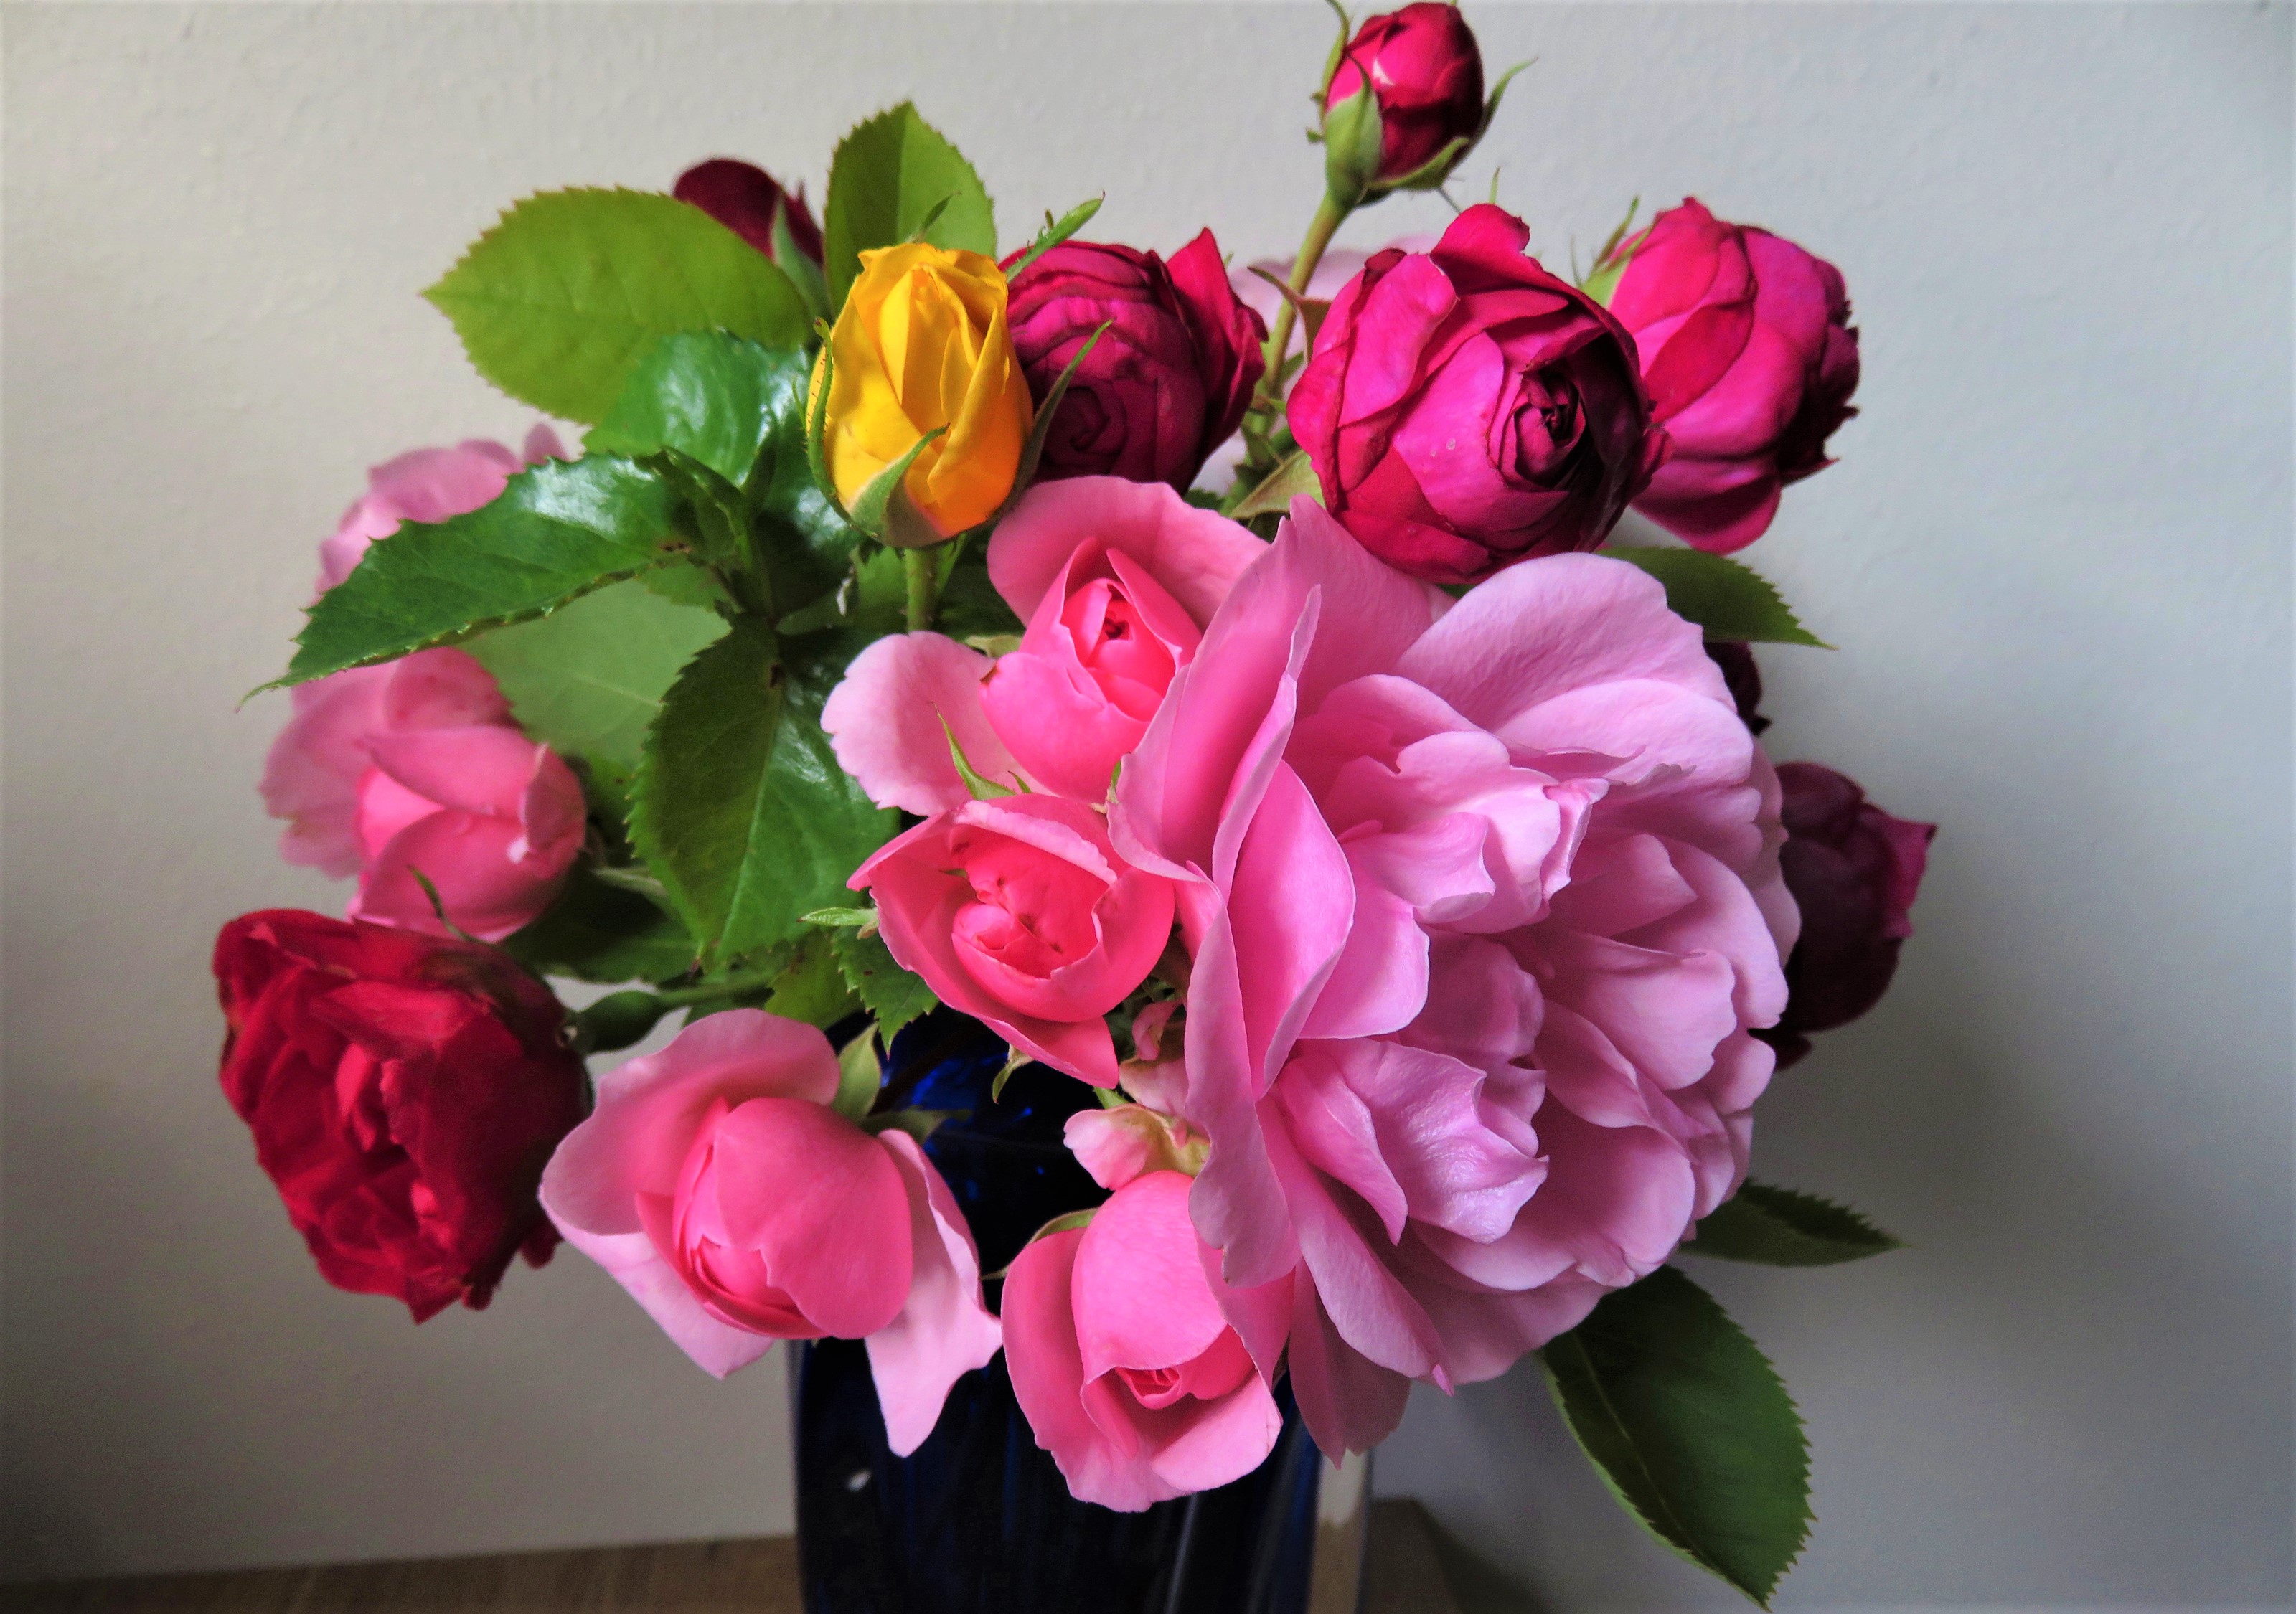 Скачать обои бесплатно Цветок, Роза, Земля, Ваза, Красочный, Сделано Человеком, Розовый Цветок картинка на рабочий стол ПК